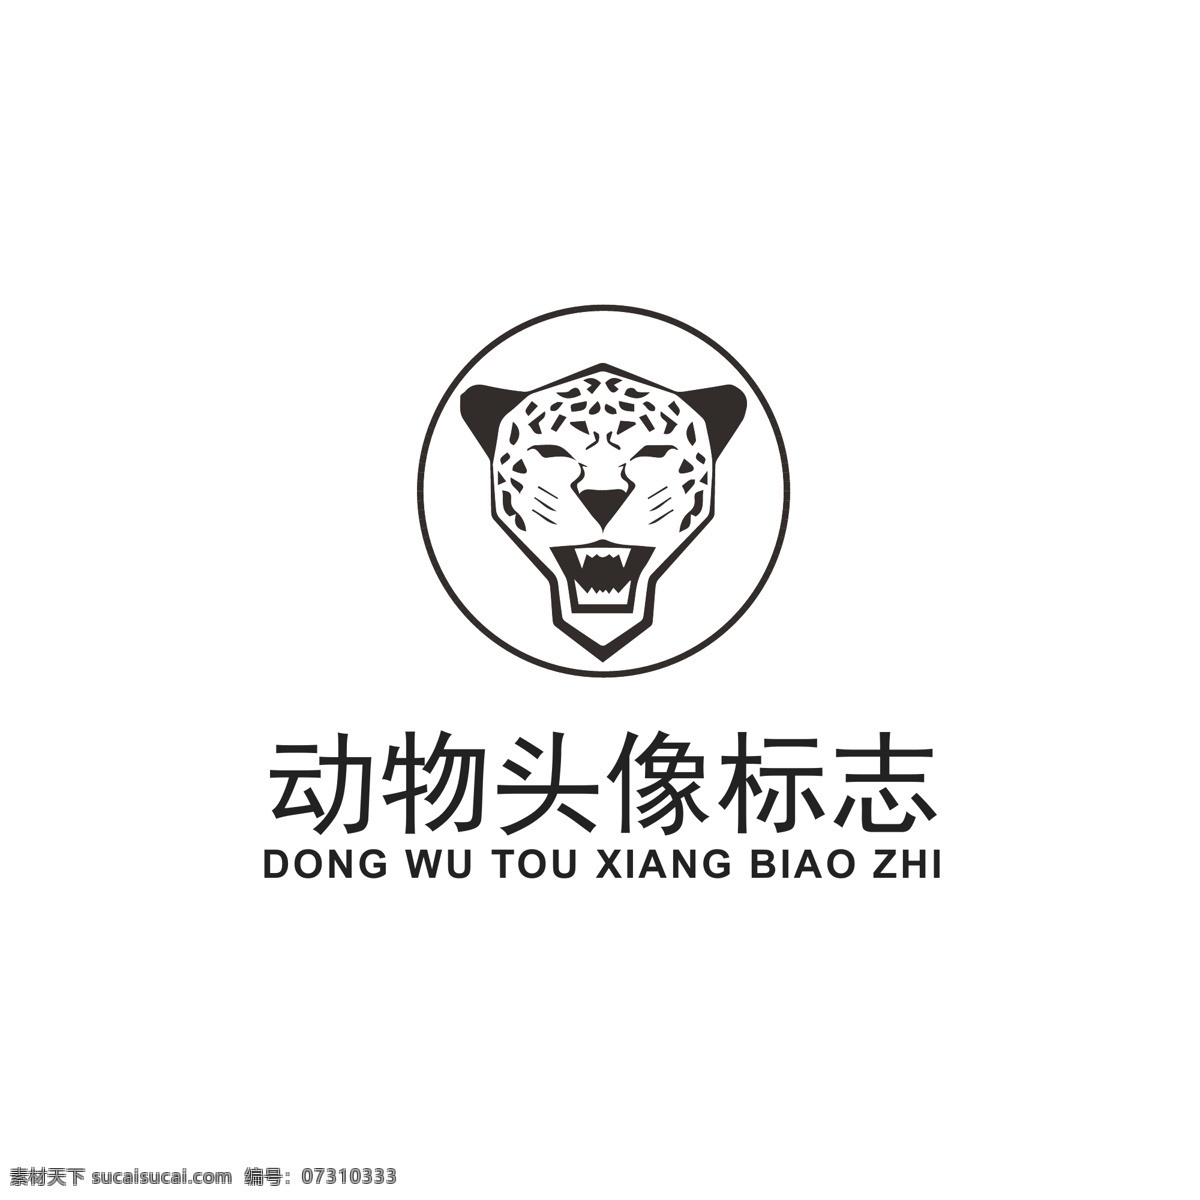 几何 动物 头像 logo 动物logo 动物头像 凶猛豹子 豹子头像 豹子logo 几何动物 品牌logo 通用logo logo设计 标识 标志 ai矢量 黑色